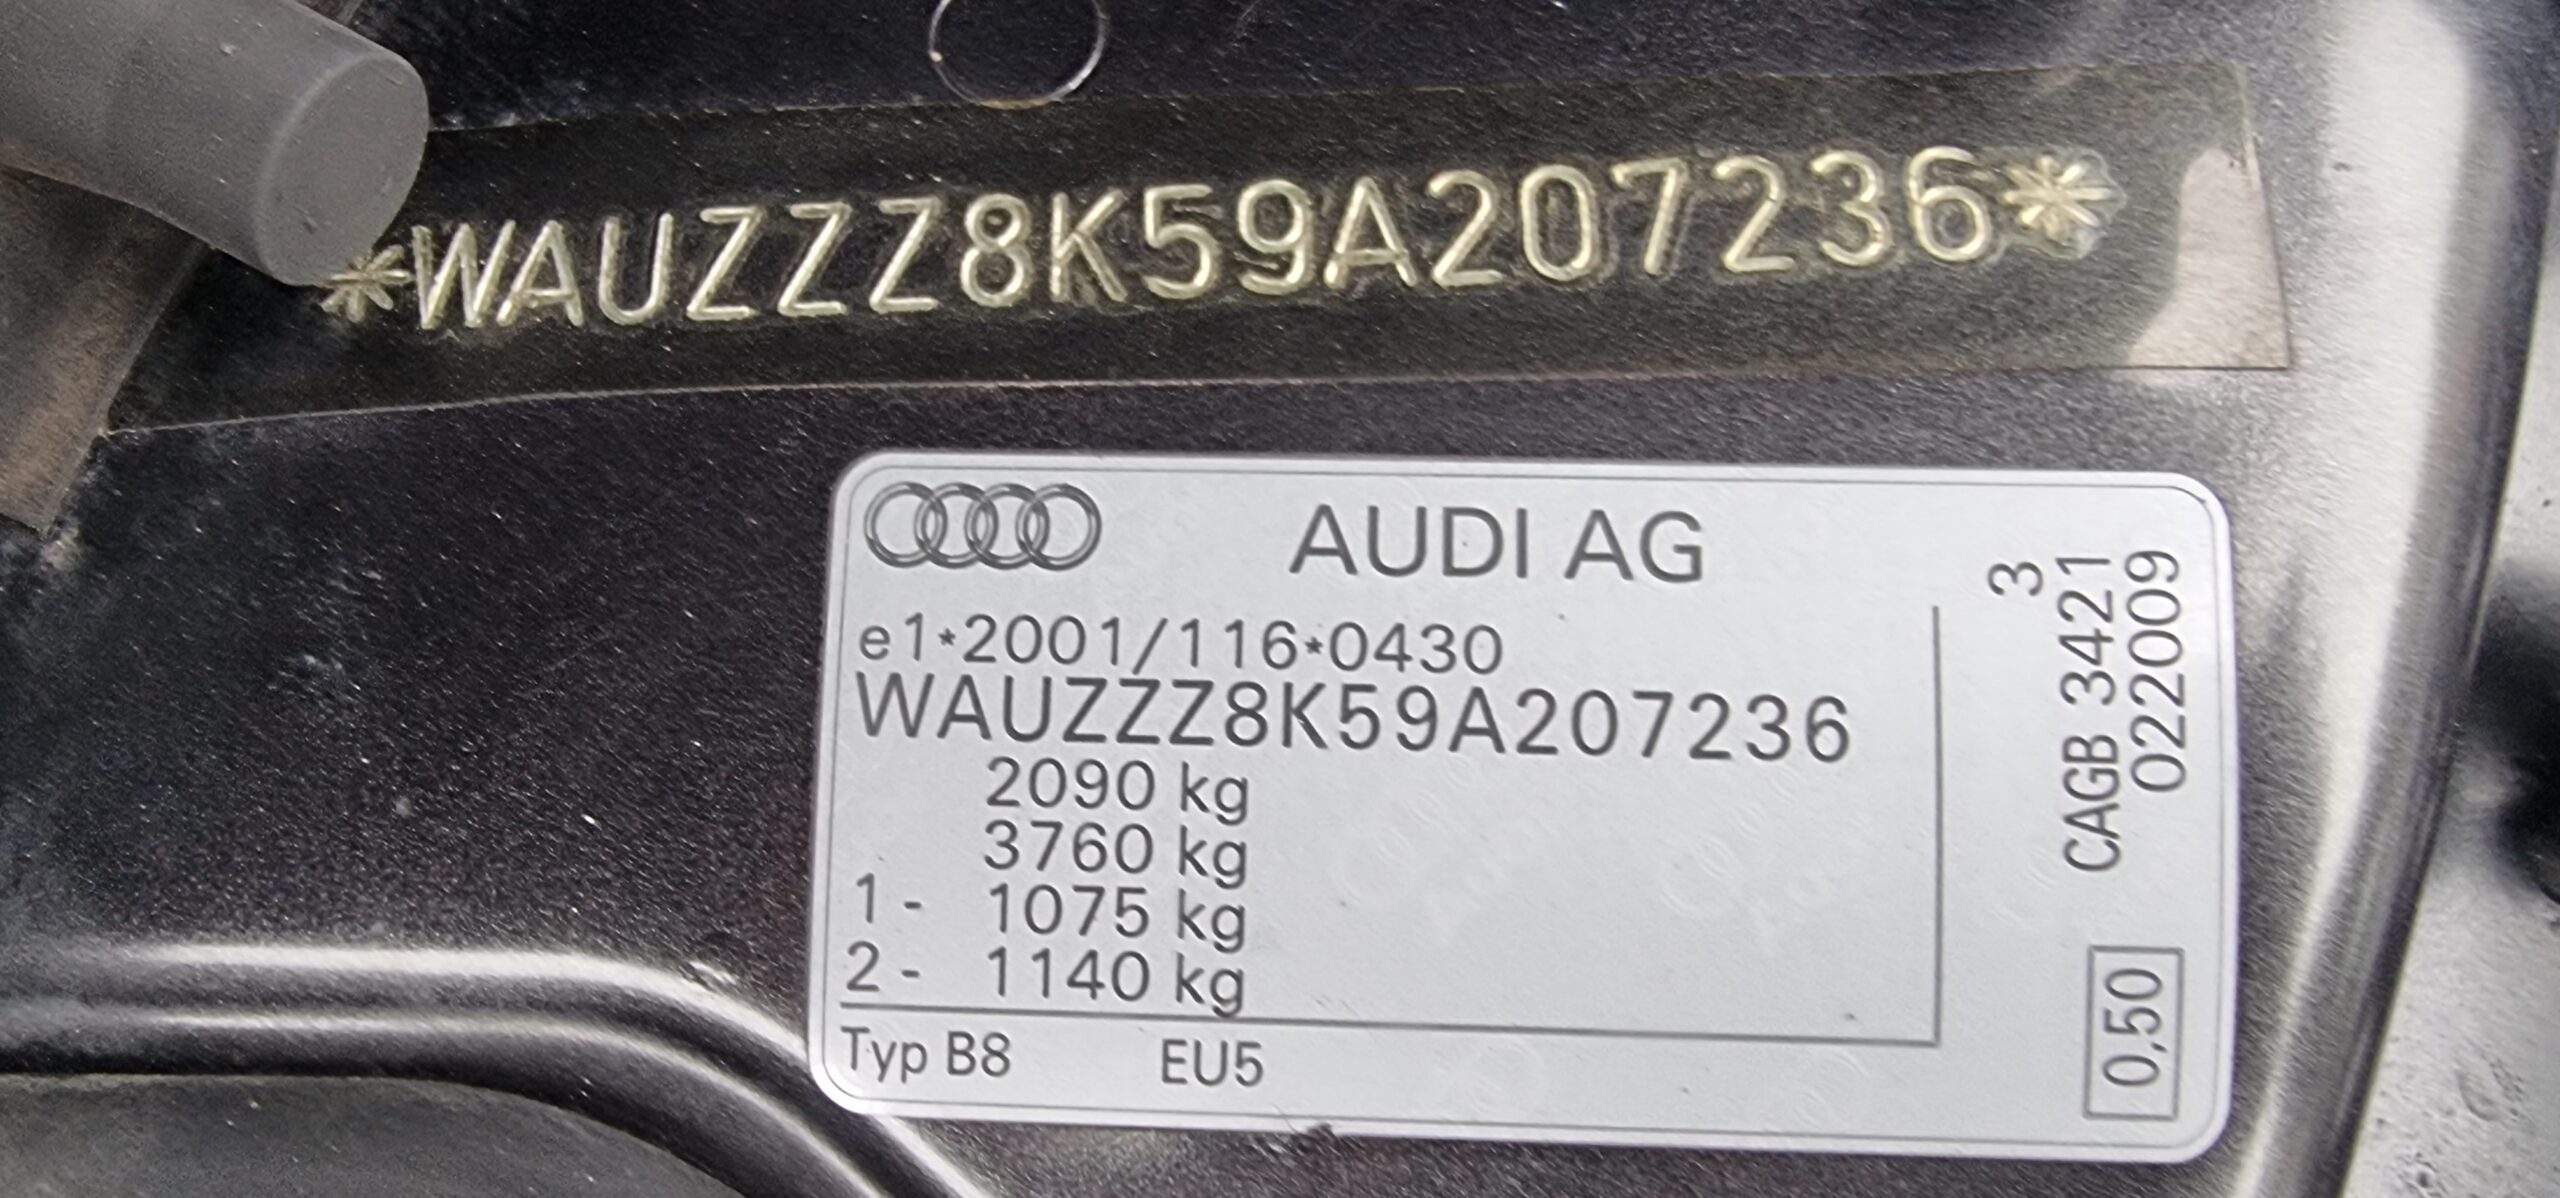 AUDI A4 S-LINE, 2.0 TDI, 143 CP, EURO 5